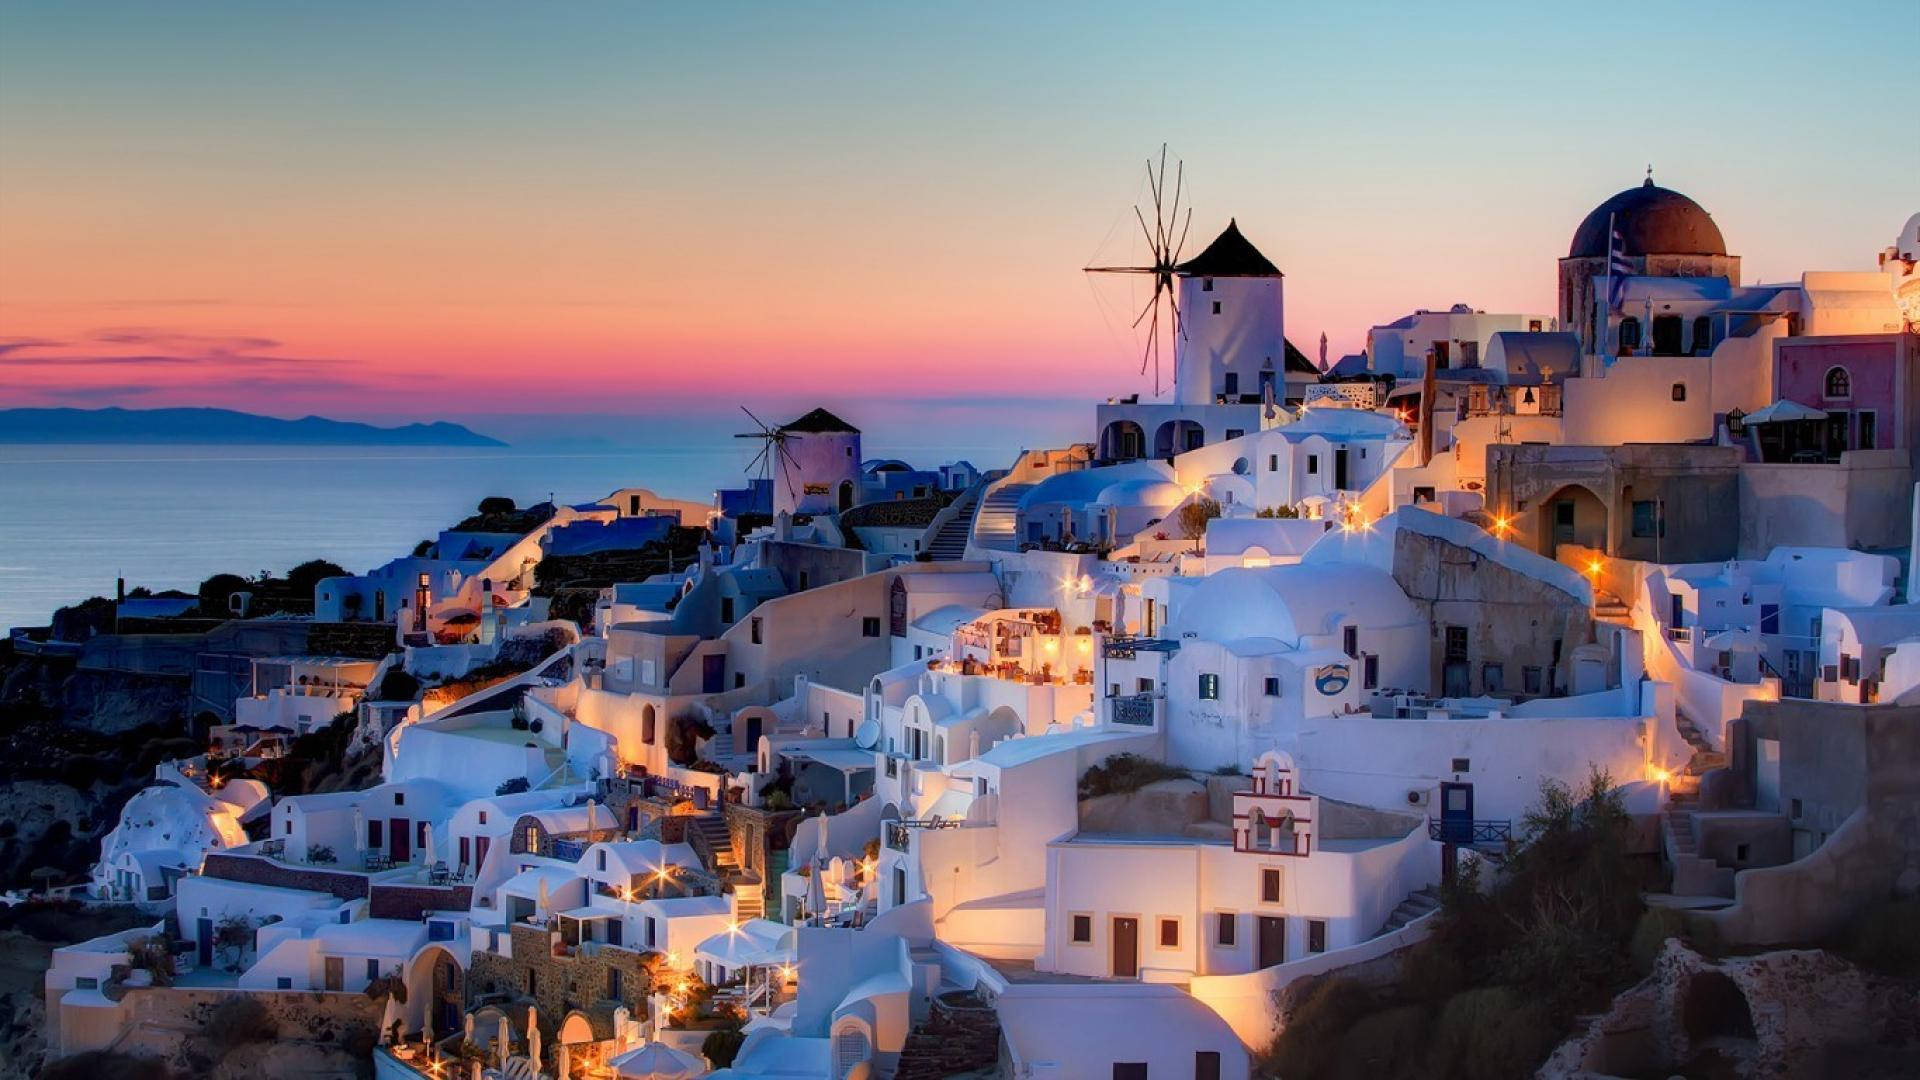 Santorini Houses In Greece Sunset Wallpaper